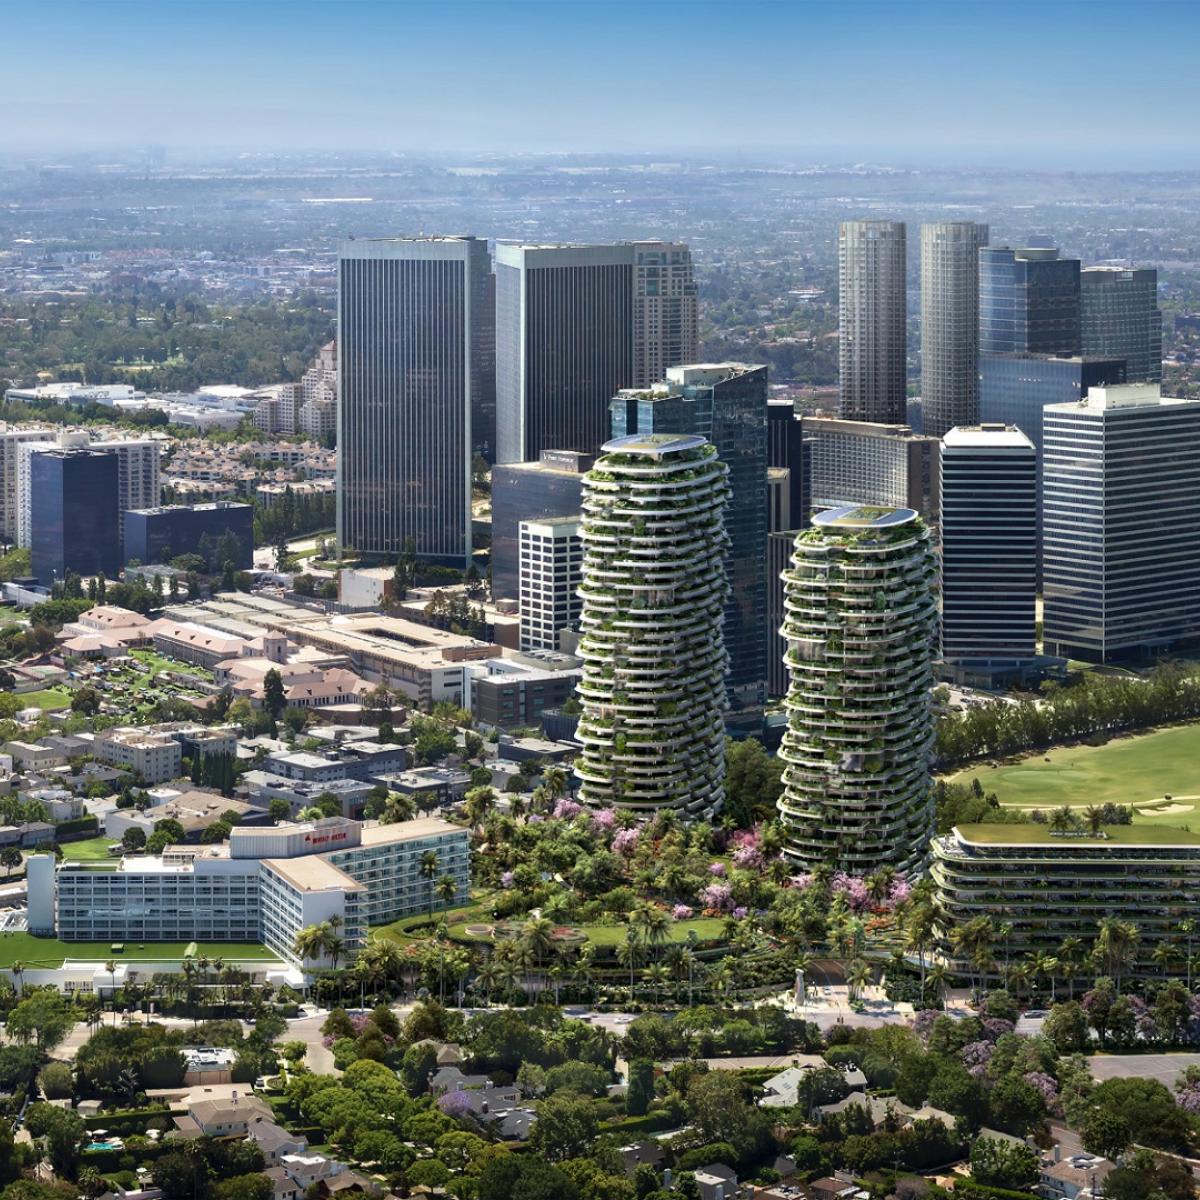 Standortvorbereitung für 2-Milliarden-Dollar-Entwicklung „One Beverly Hills“ im Gange | Urbanisieren Sie LA